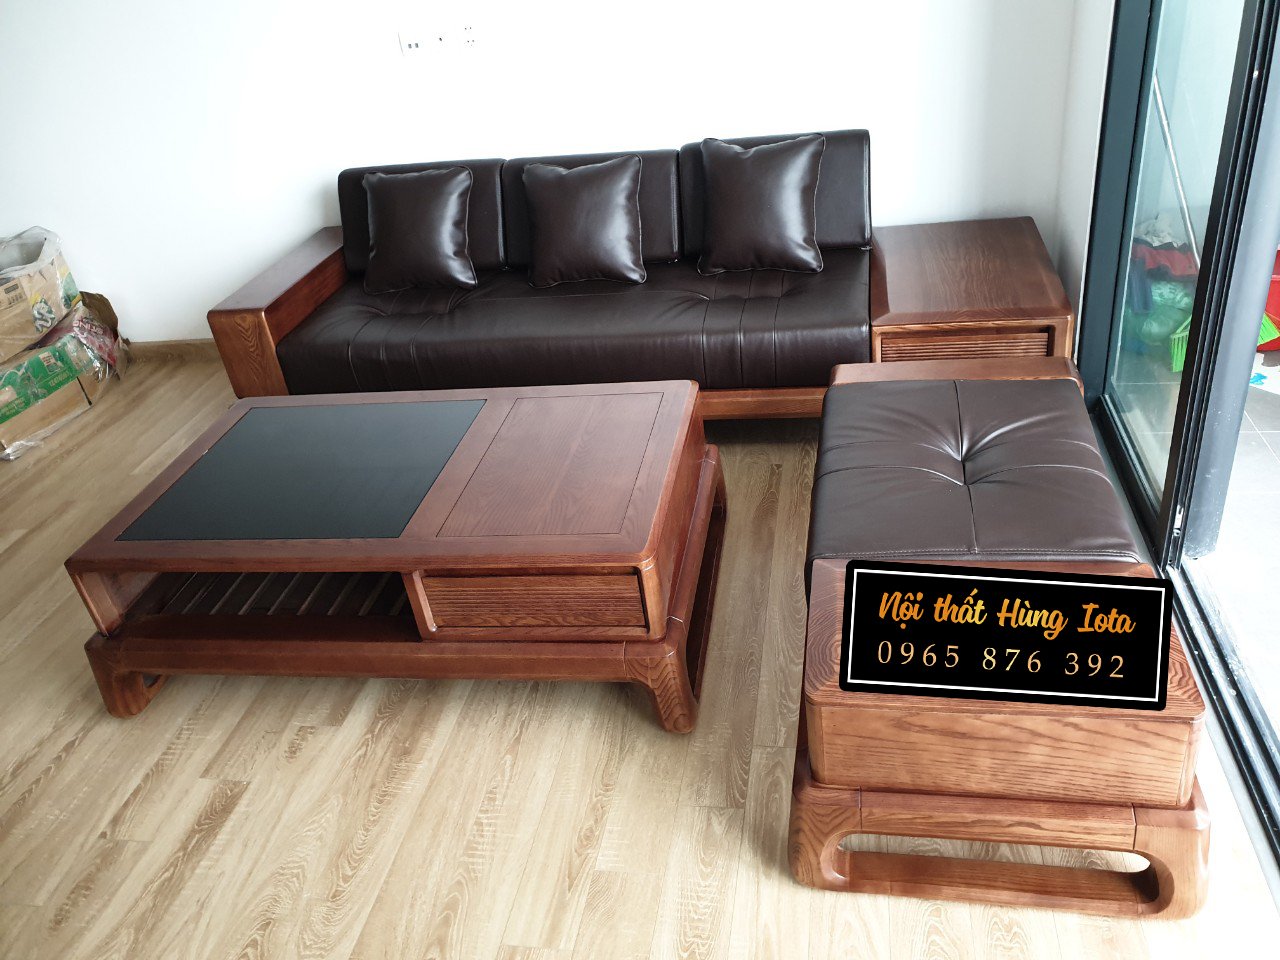 Với kiểu dáng đơn giản và tinh tế, chiếc sofa gỗ óc chó đệm da đen đem lại không gian nội thất đẳng cấp và sang trọng. Với chất lượng tốt và mức giá hợp lý, sản phẩm này sẽ làm hài lòng bạn bè và khách hàng của bạn. Đừng bỏ lỡ cơ hội sở hữu một chiếc sofa đẹp như thế này.